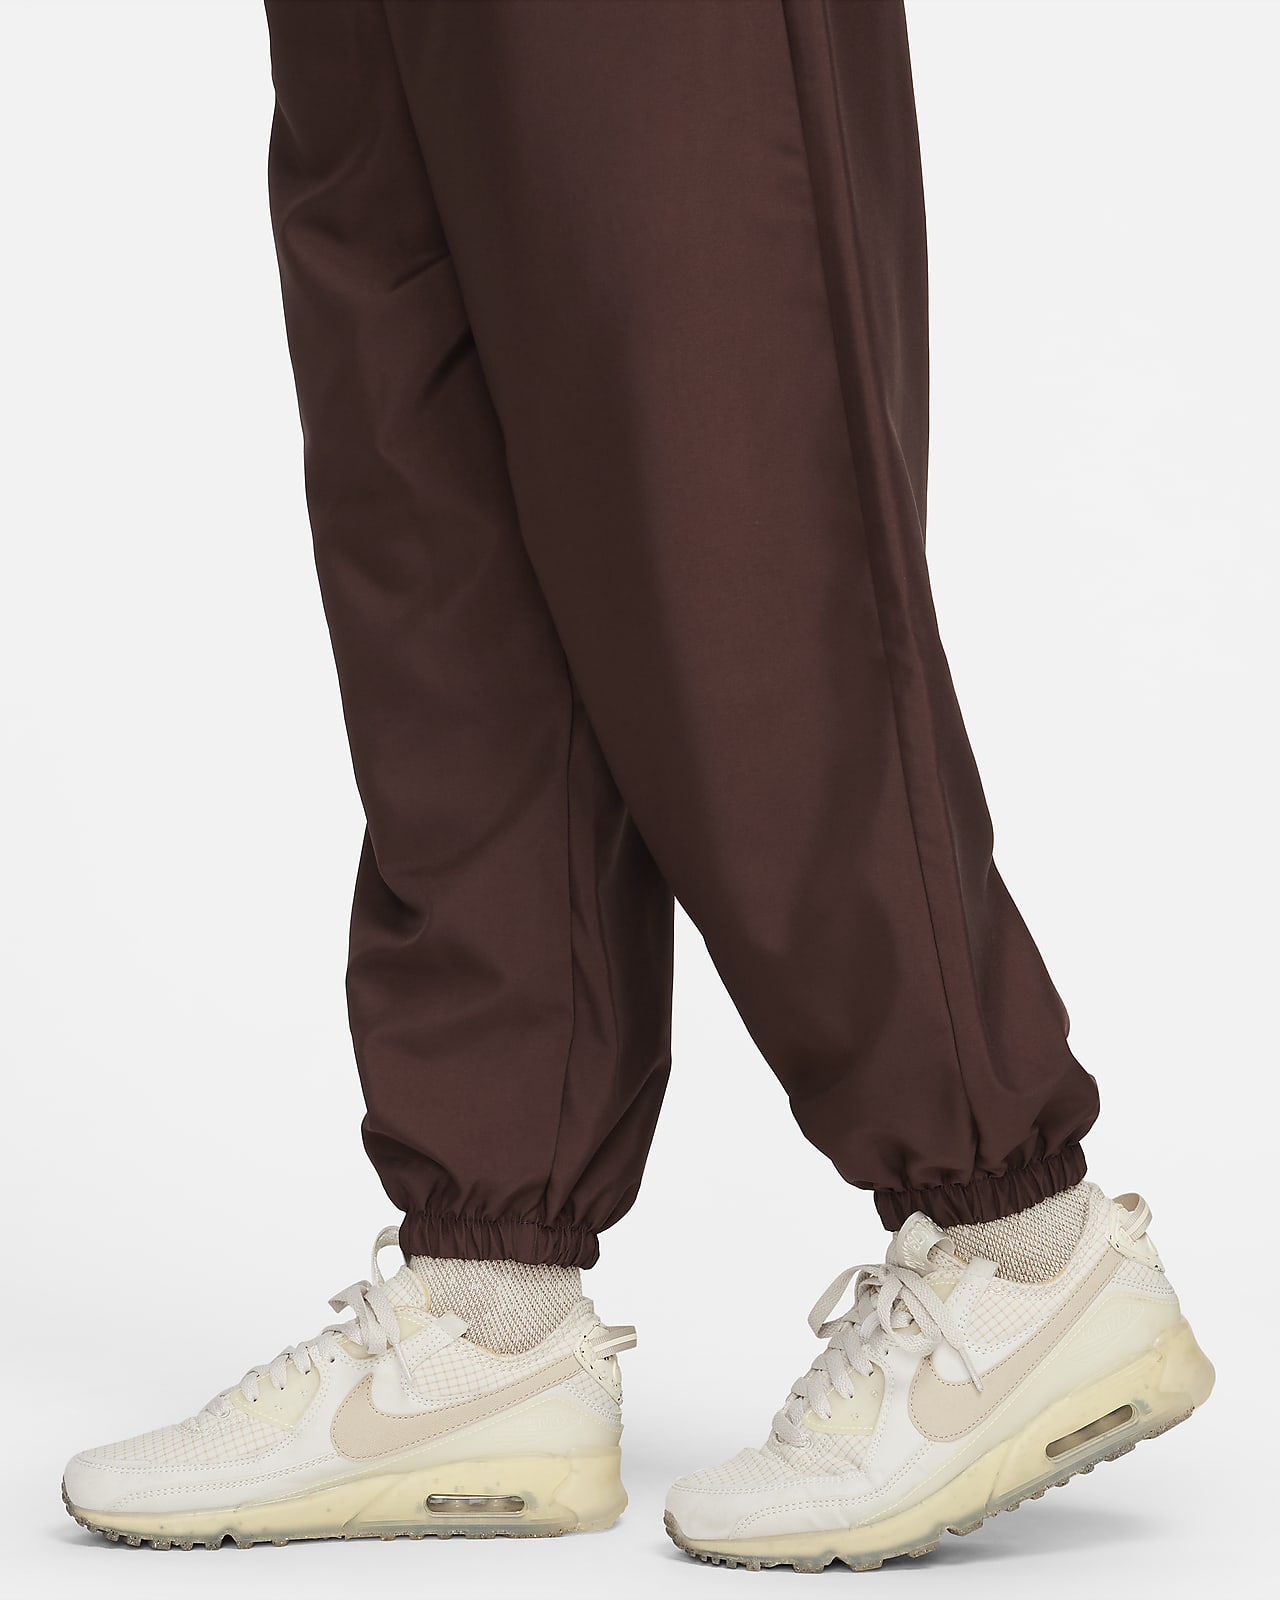 Nike Sportswear Womens Python Woven Jogger Pants Burgundy CJ6347 677 Sz XL  $65